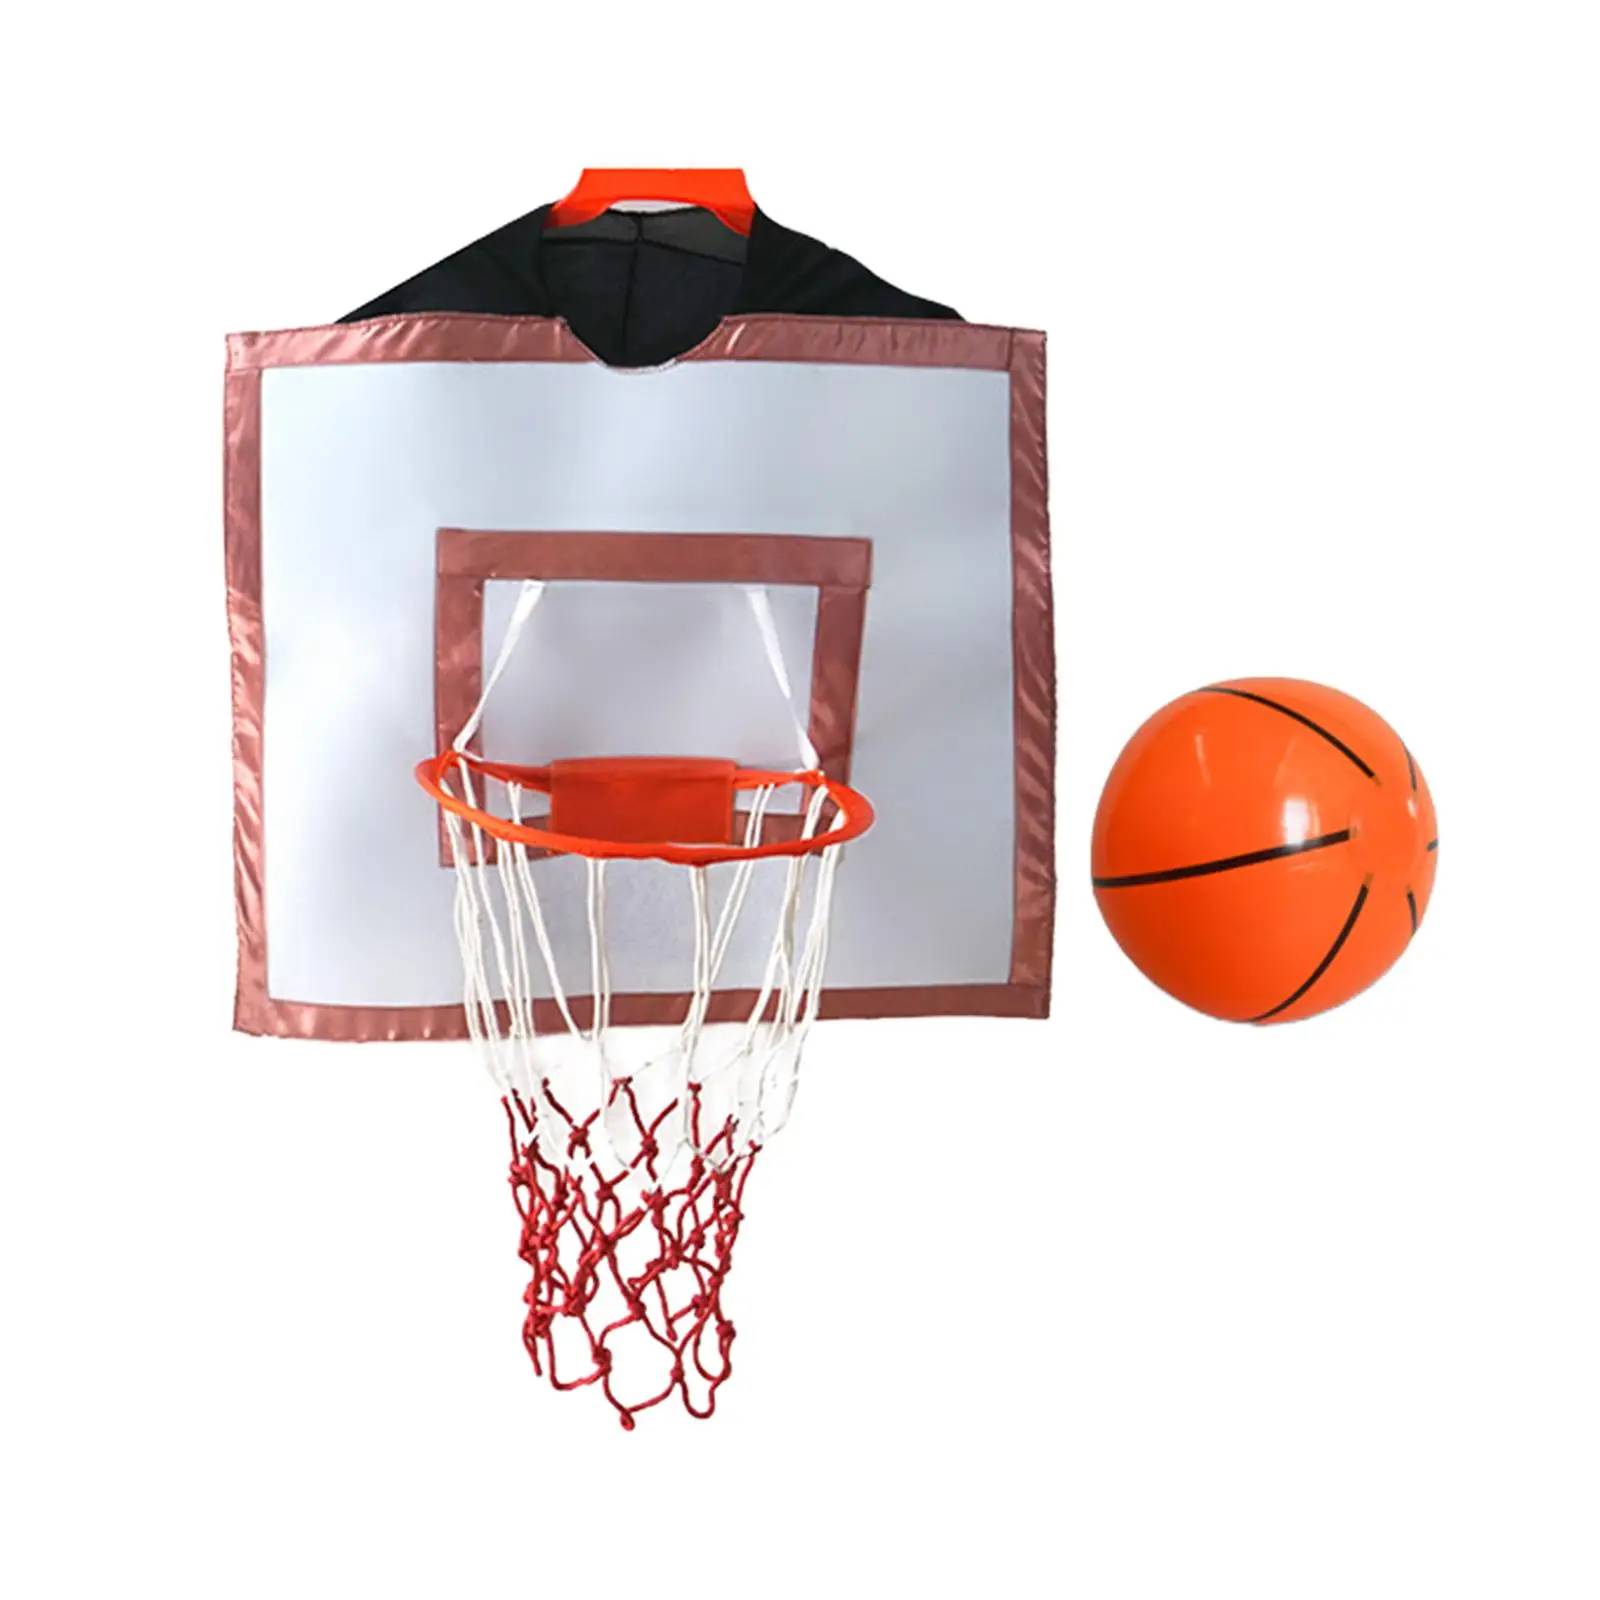 Wearable Basketball Hoop Costumes Indoor Outdoor Clothing Accessories Basketball Rim for Kindergarten Boy Family Activities